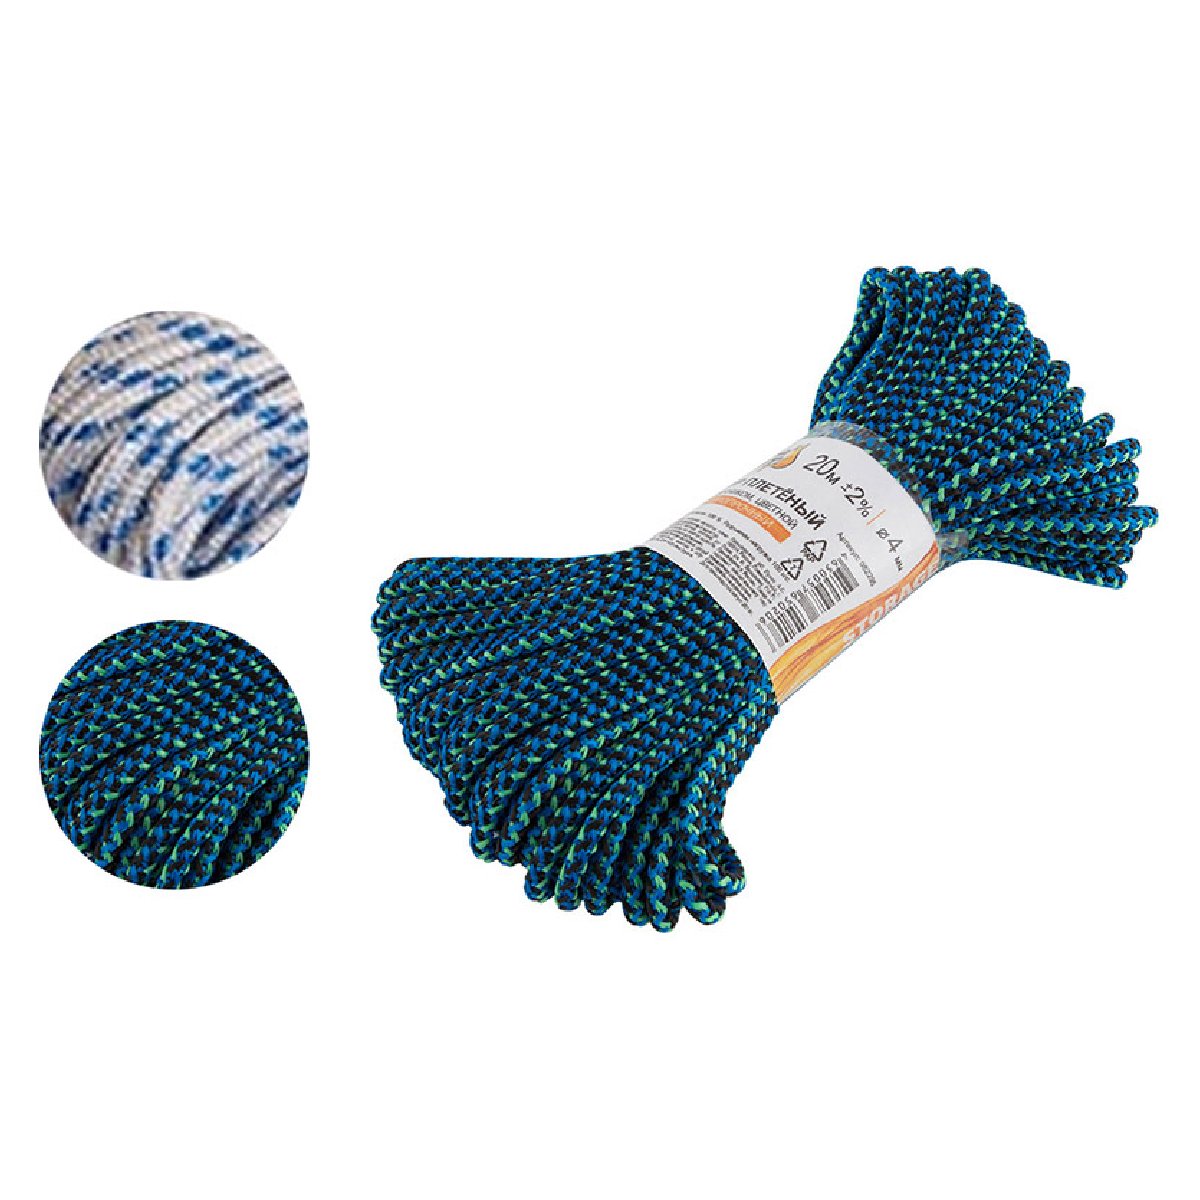 Шнур плетеный с сердечником высокопрочный цветной д. 4 мм (20 метров) (082295)Купить